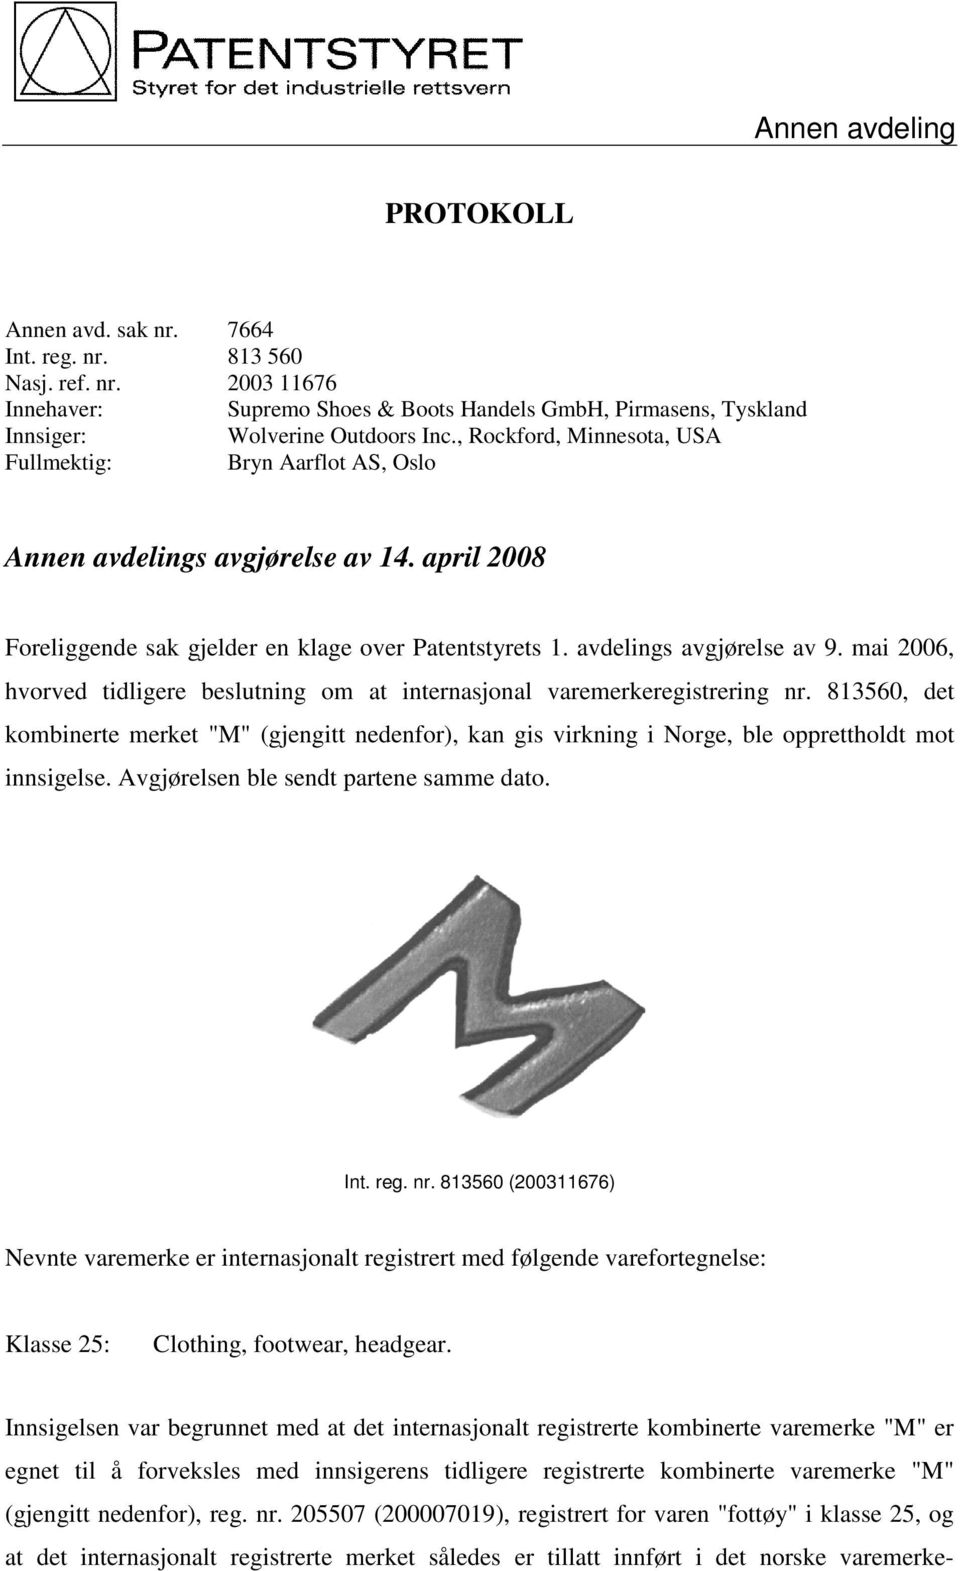 mai 2006, hvorved tidligere beslutning om at internasjonal varemerkeregistrering nr. 813560, det kombinerte merket "M" (gjengitt nedenfor), kan gis virkning i Norge, ble opprettholdt mot innsigelse.